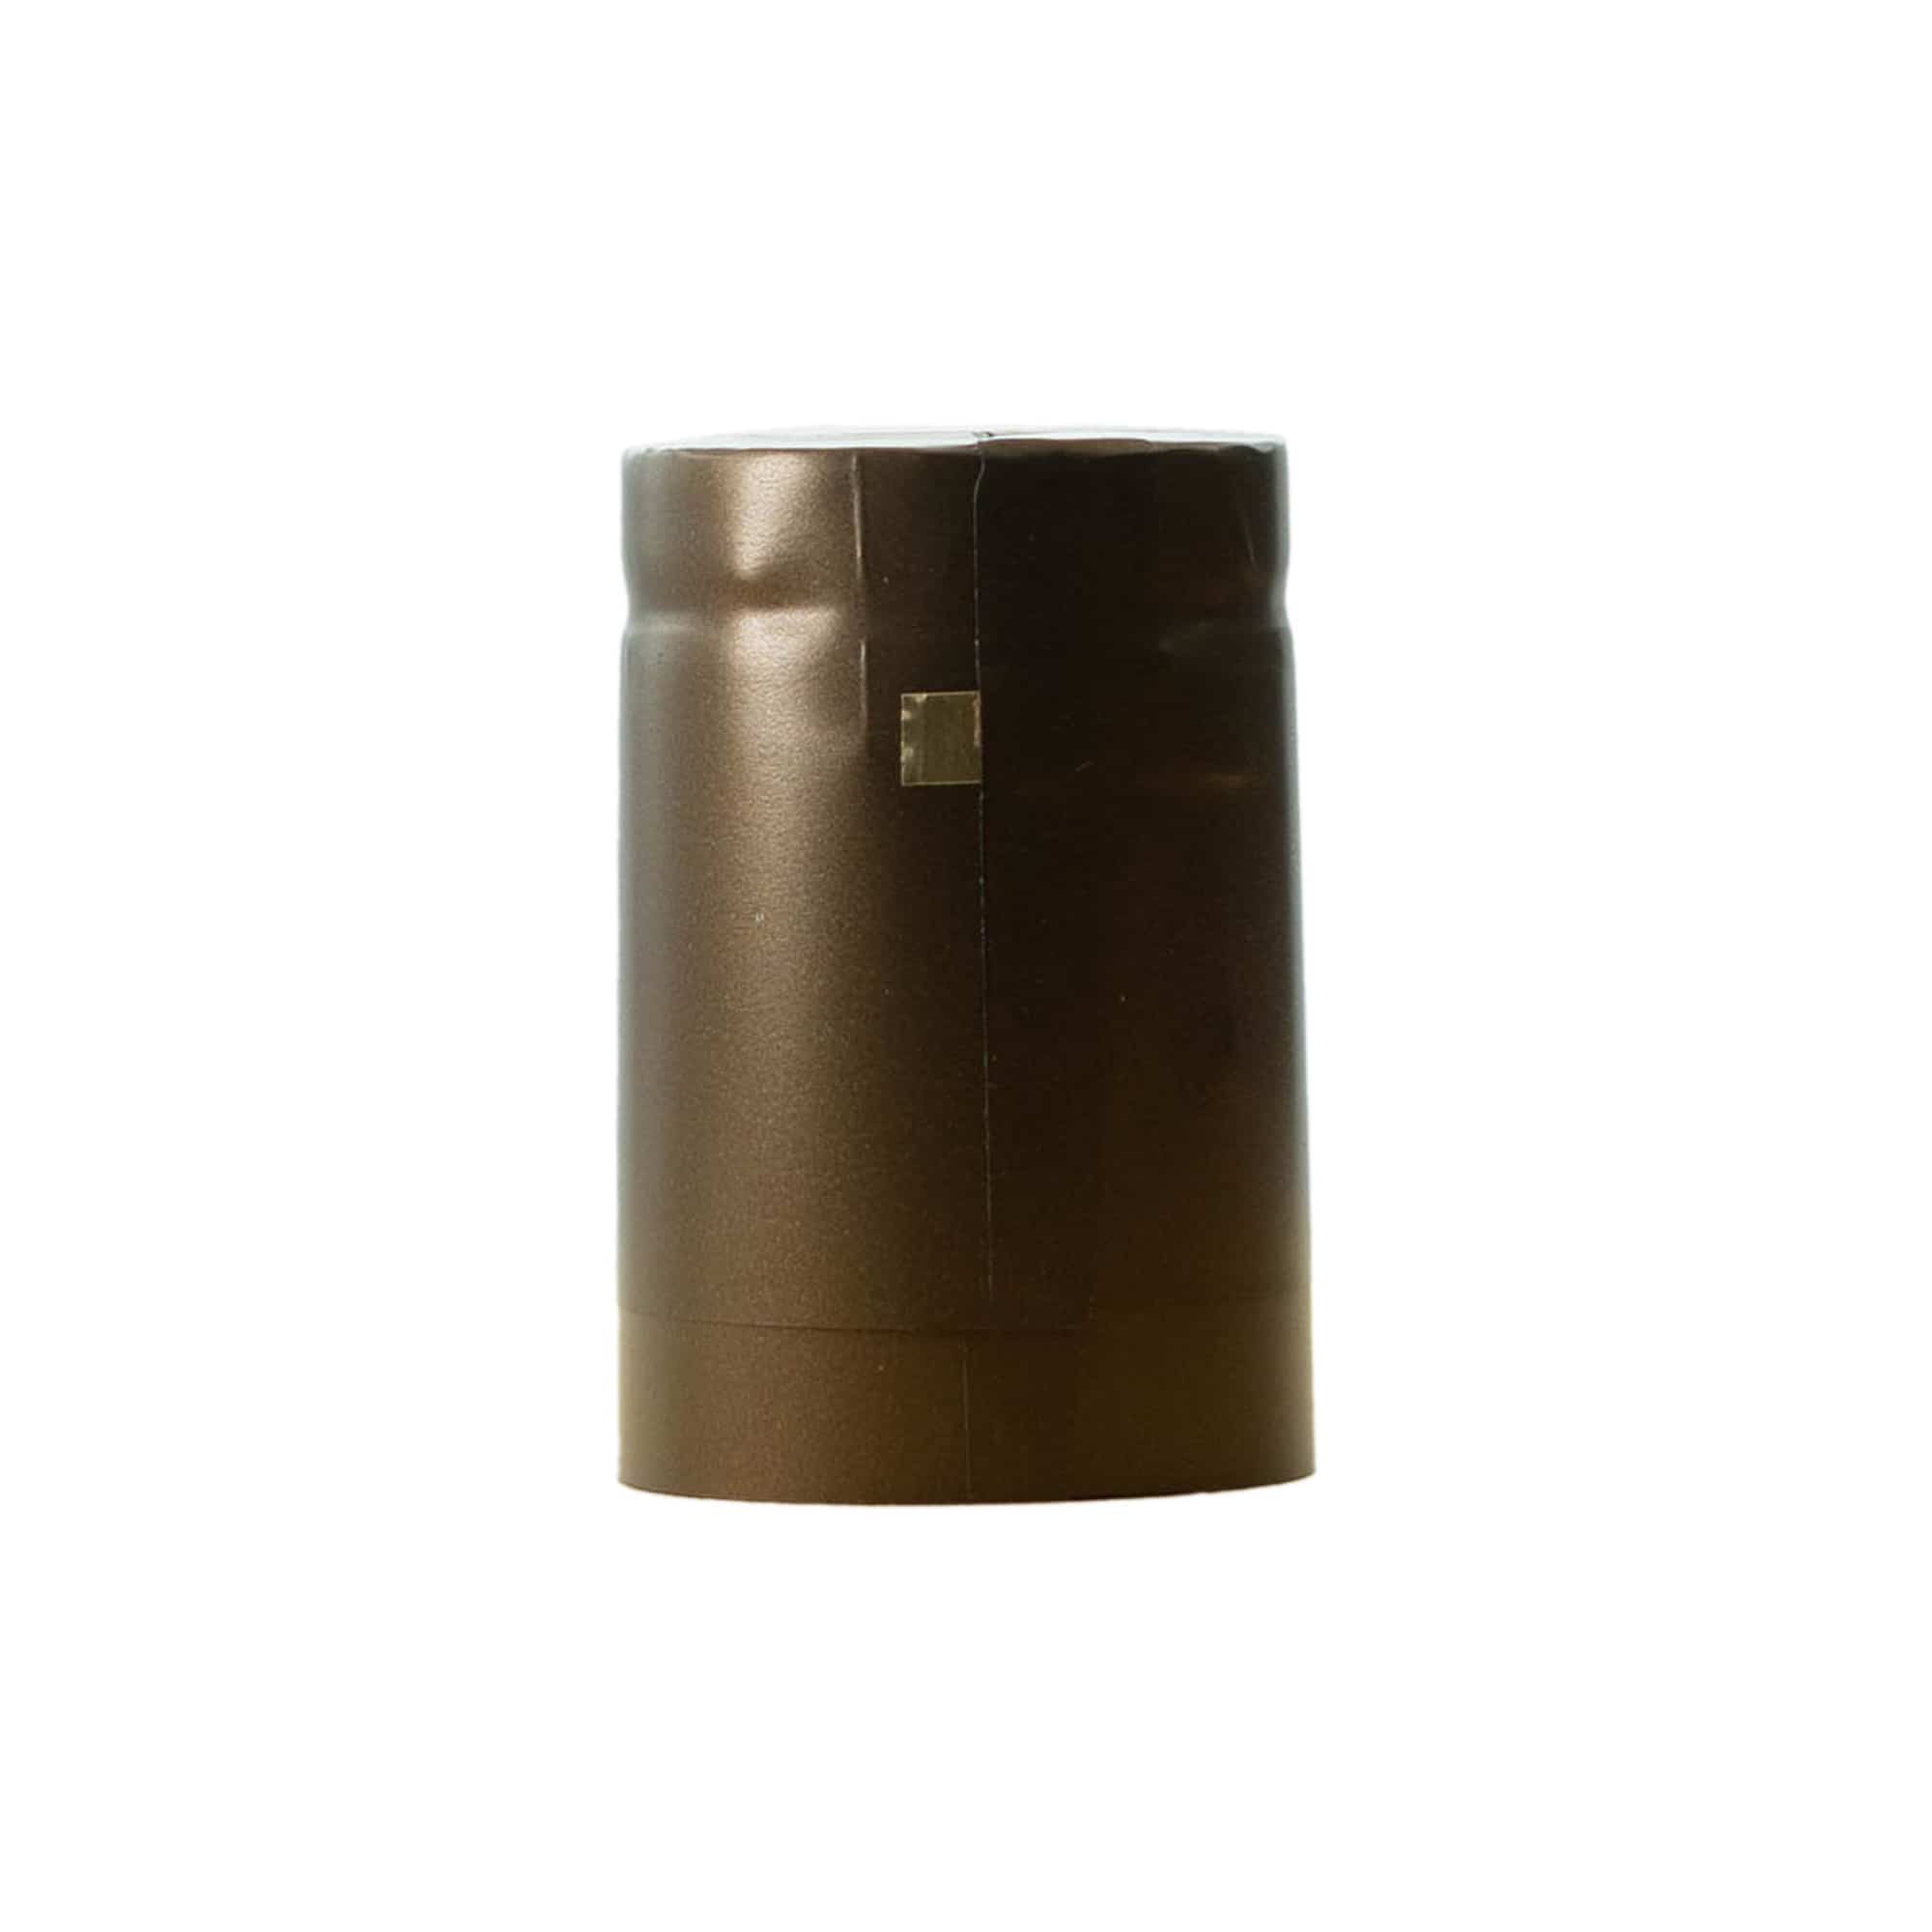 Capsule thermo-rétractable 32x41, plastique PVC, or ducat